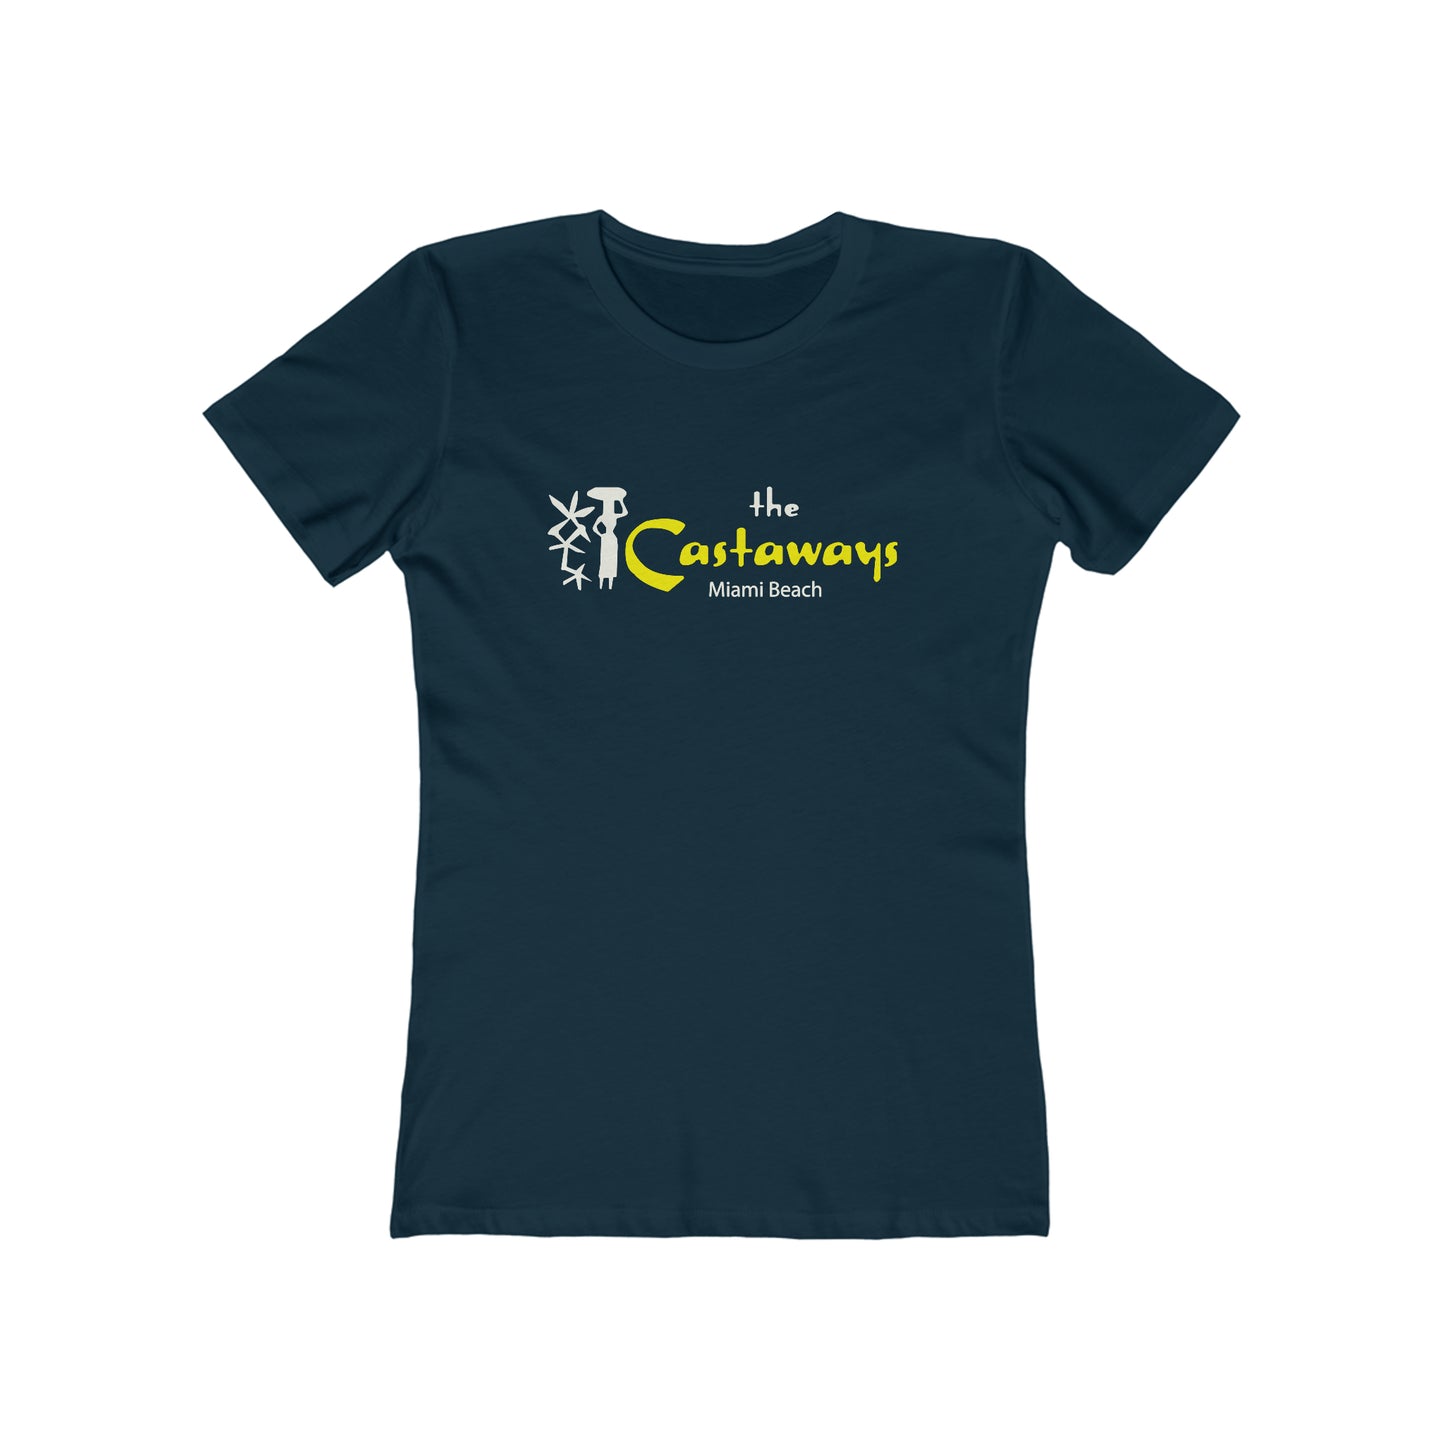 The Castaways - Women's T-Shirt